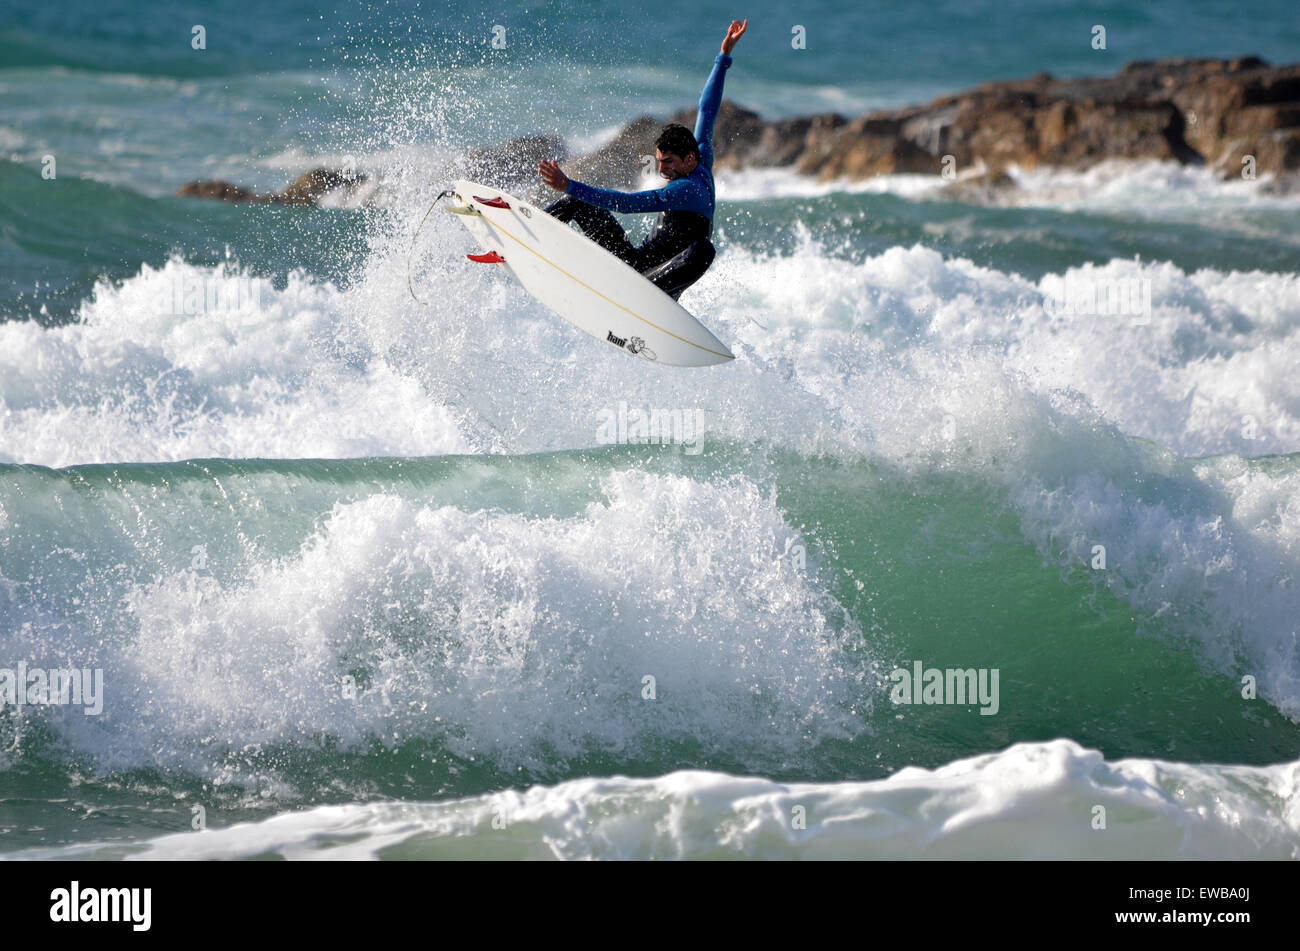 Les spins surfer sur la crête d'une vague photographié dans la mer Méditerranée, Tel Aviv ISRAËL Banque D'Images